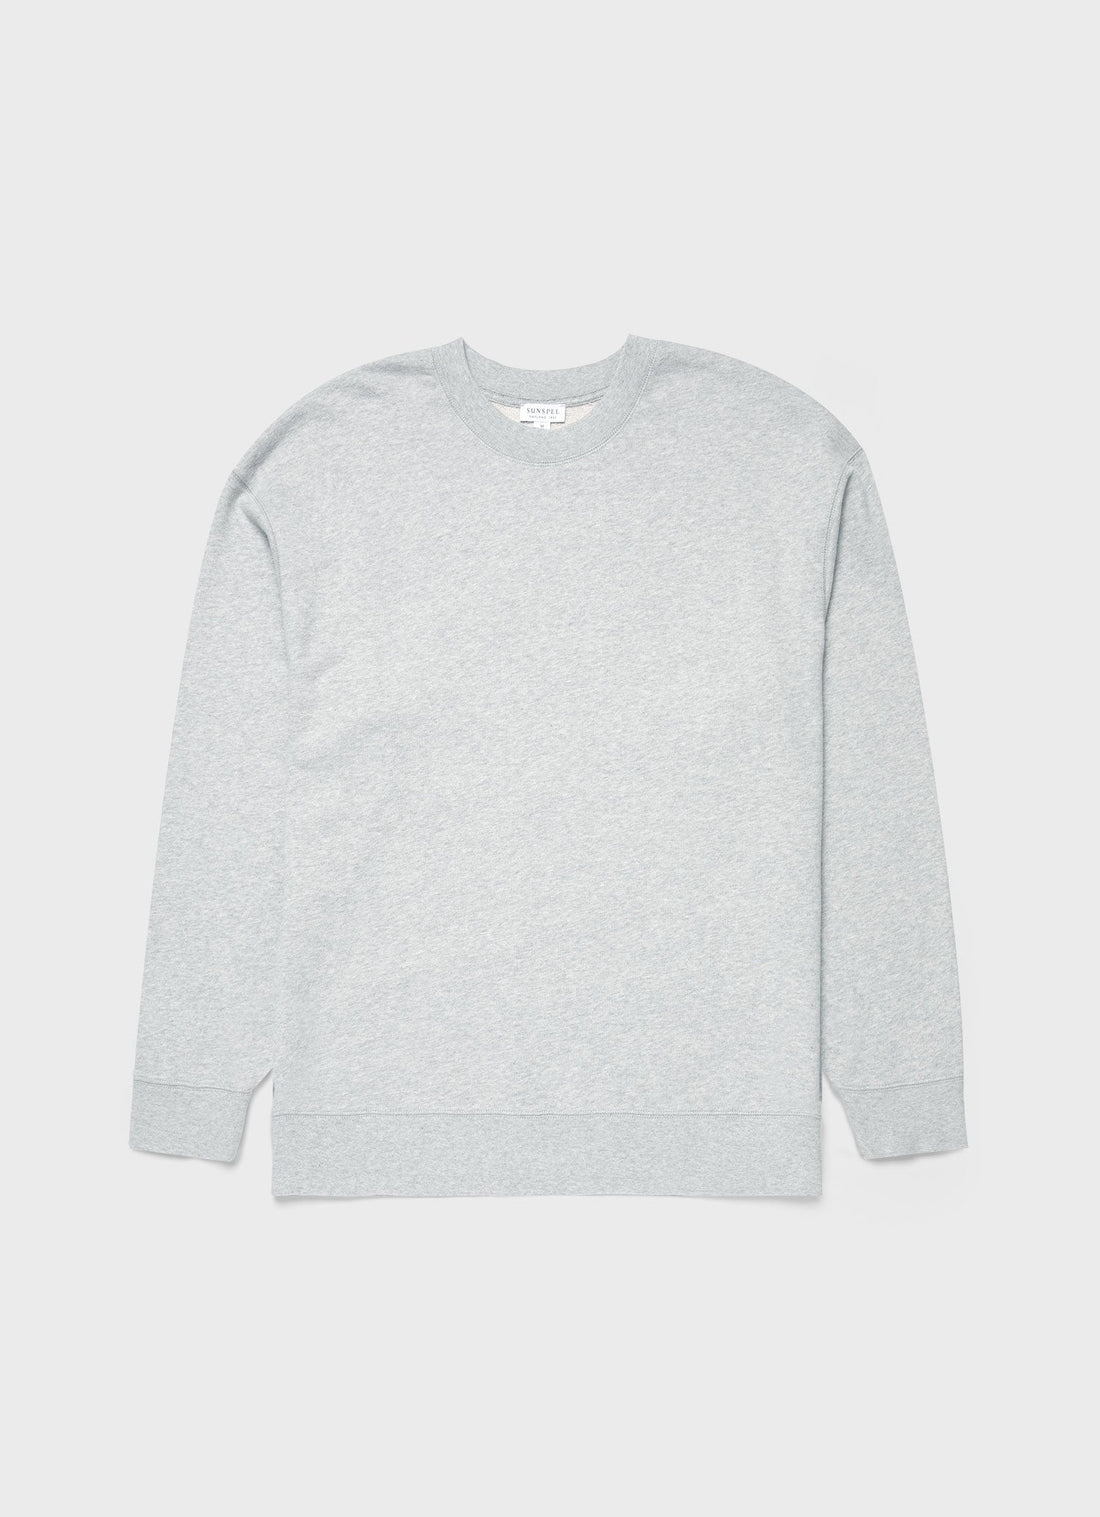 Men's Oversized Loopback Sweatshirt in Light Grey Melange